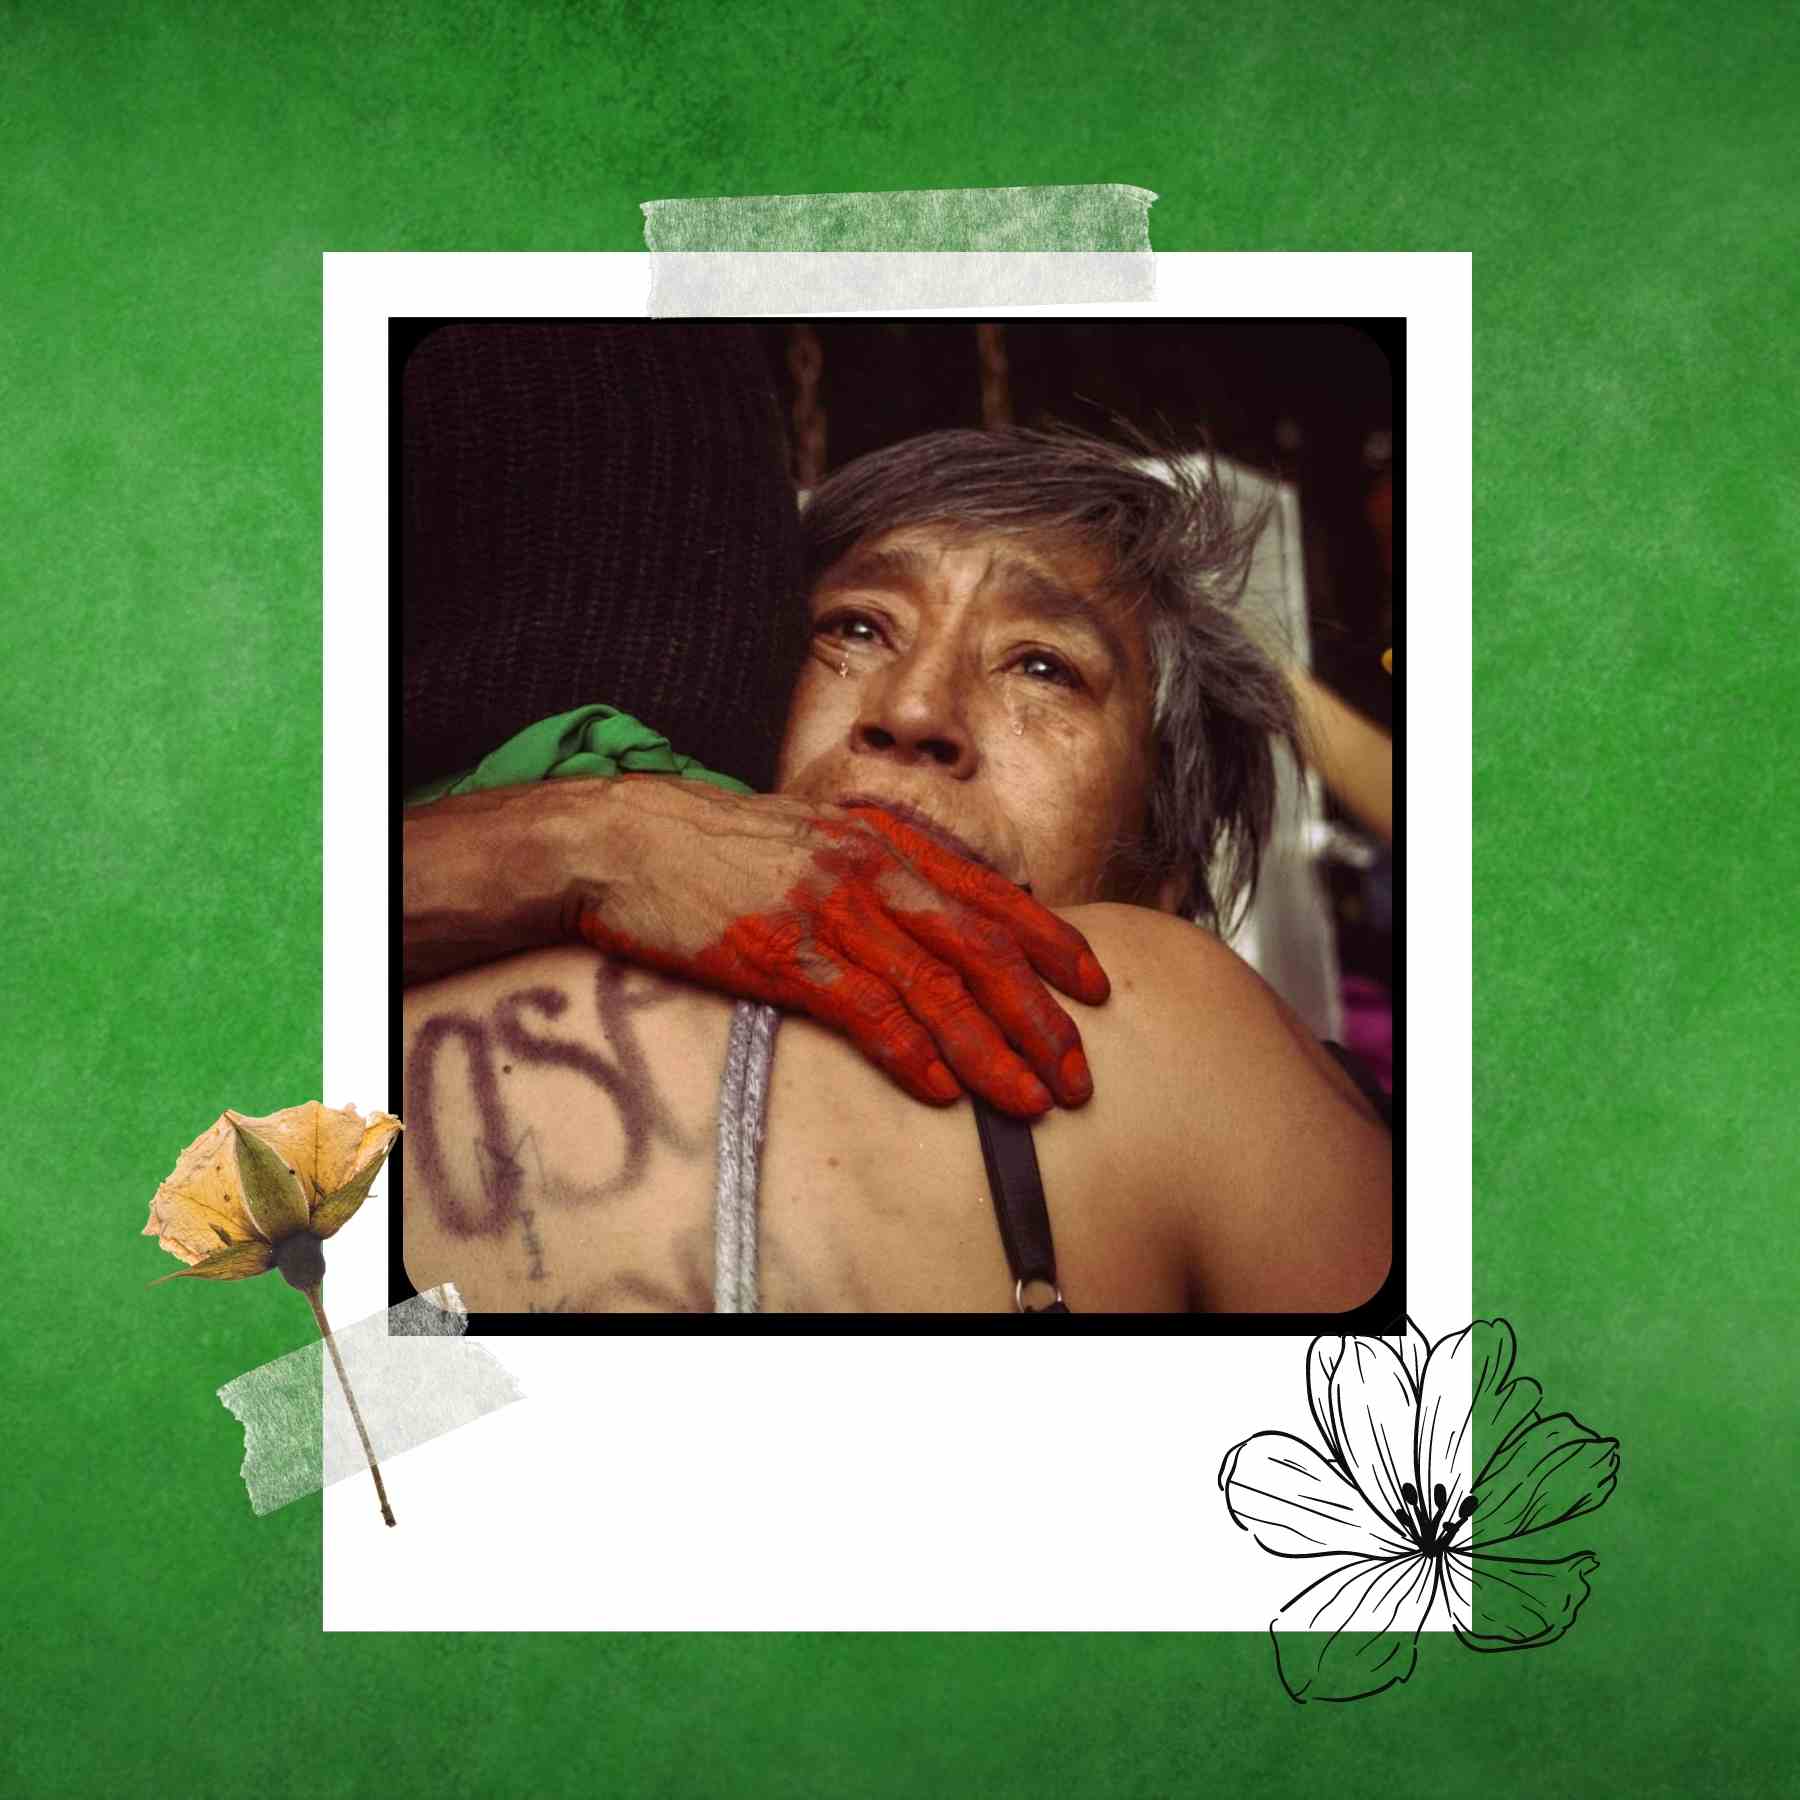 fotografía ganadora del concurso entre voces y memorias en Puebla movimientos feministas